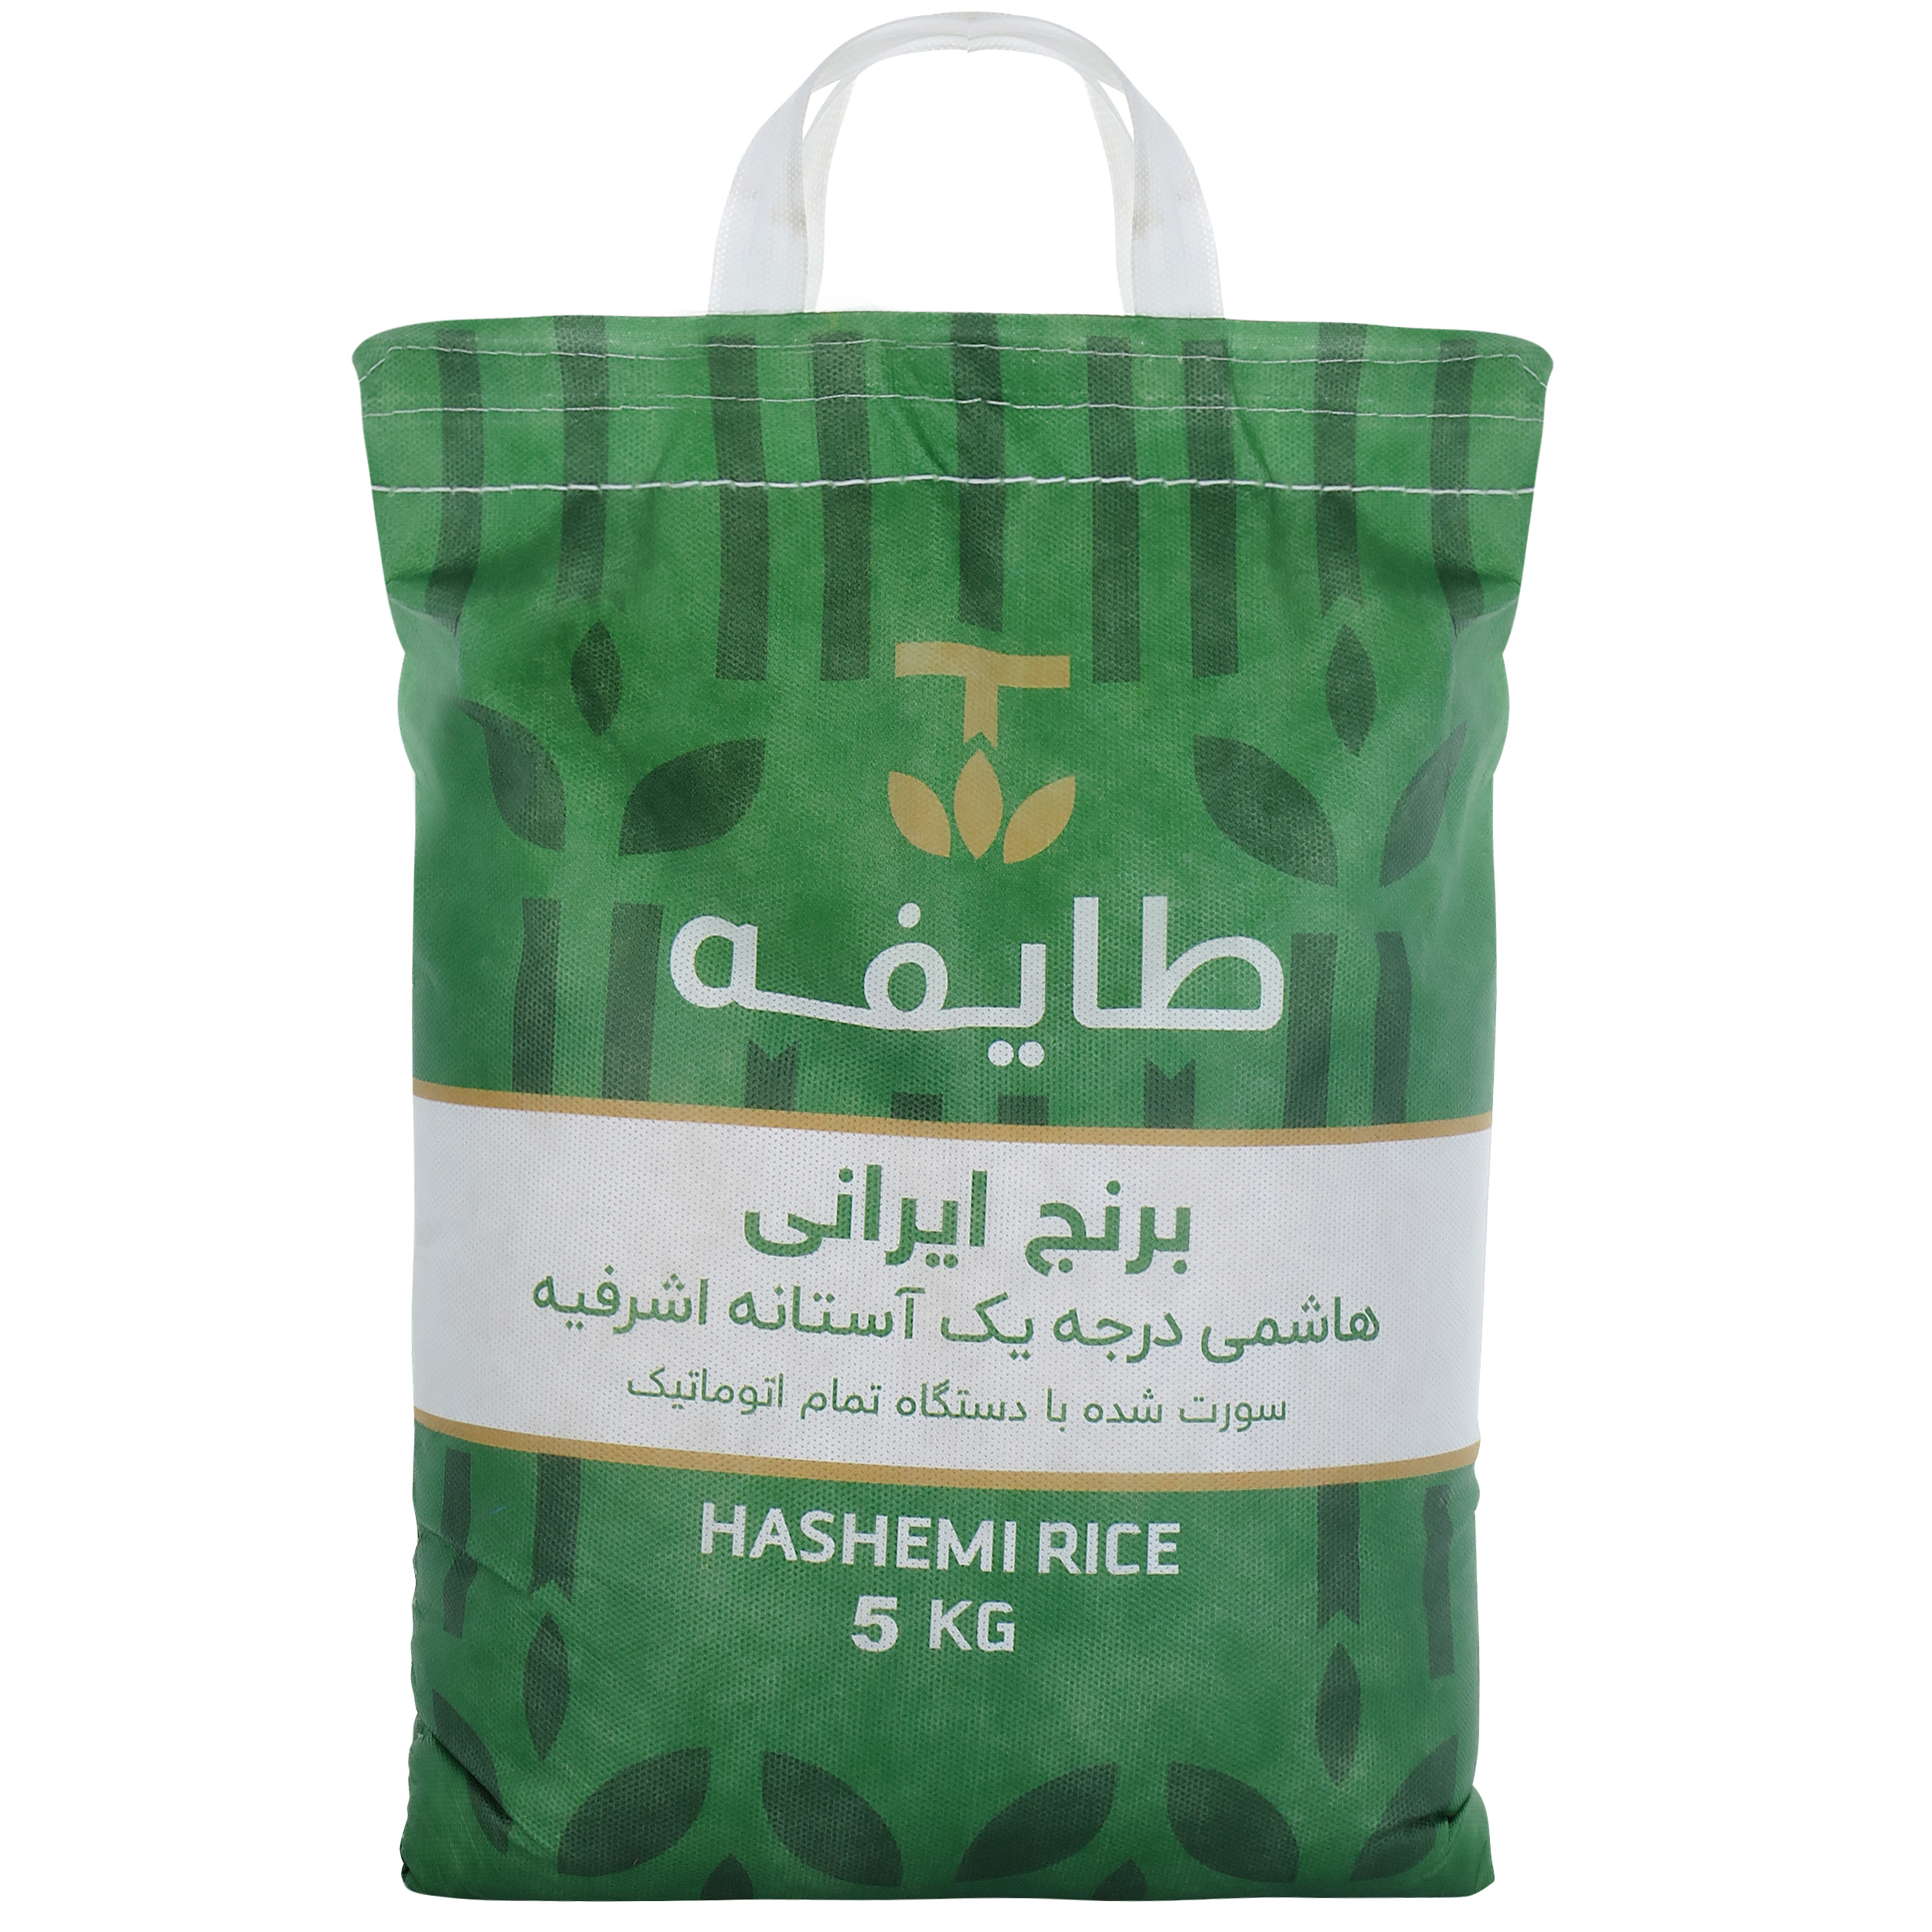 نکته خرید - قیمت روز برنج هاشمی معطر درجه یک آستانه اشرفیه طایفه - 5 کیلوگرم خرید